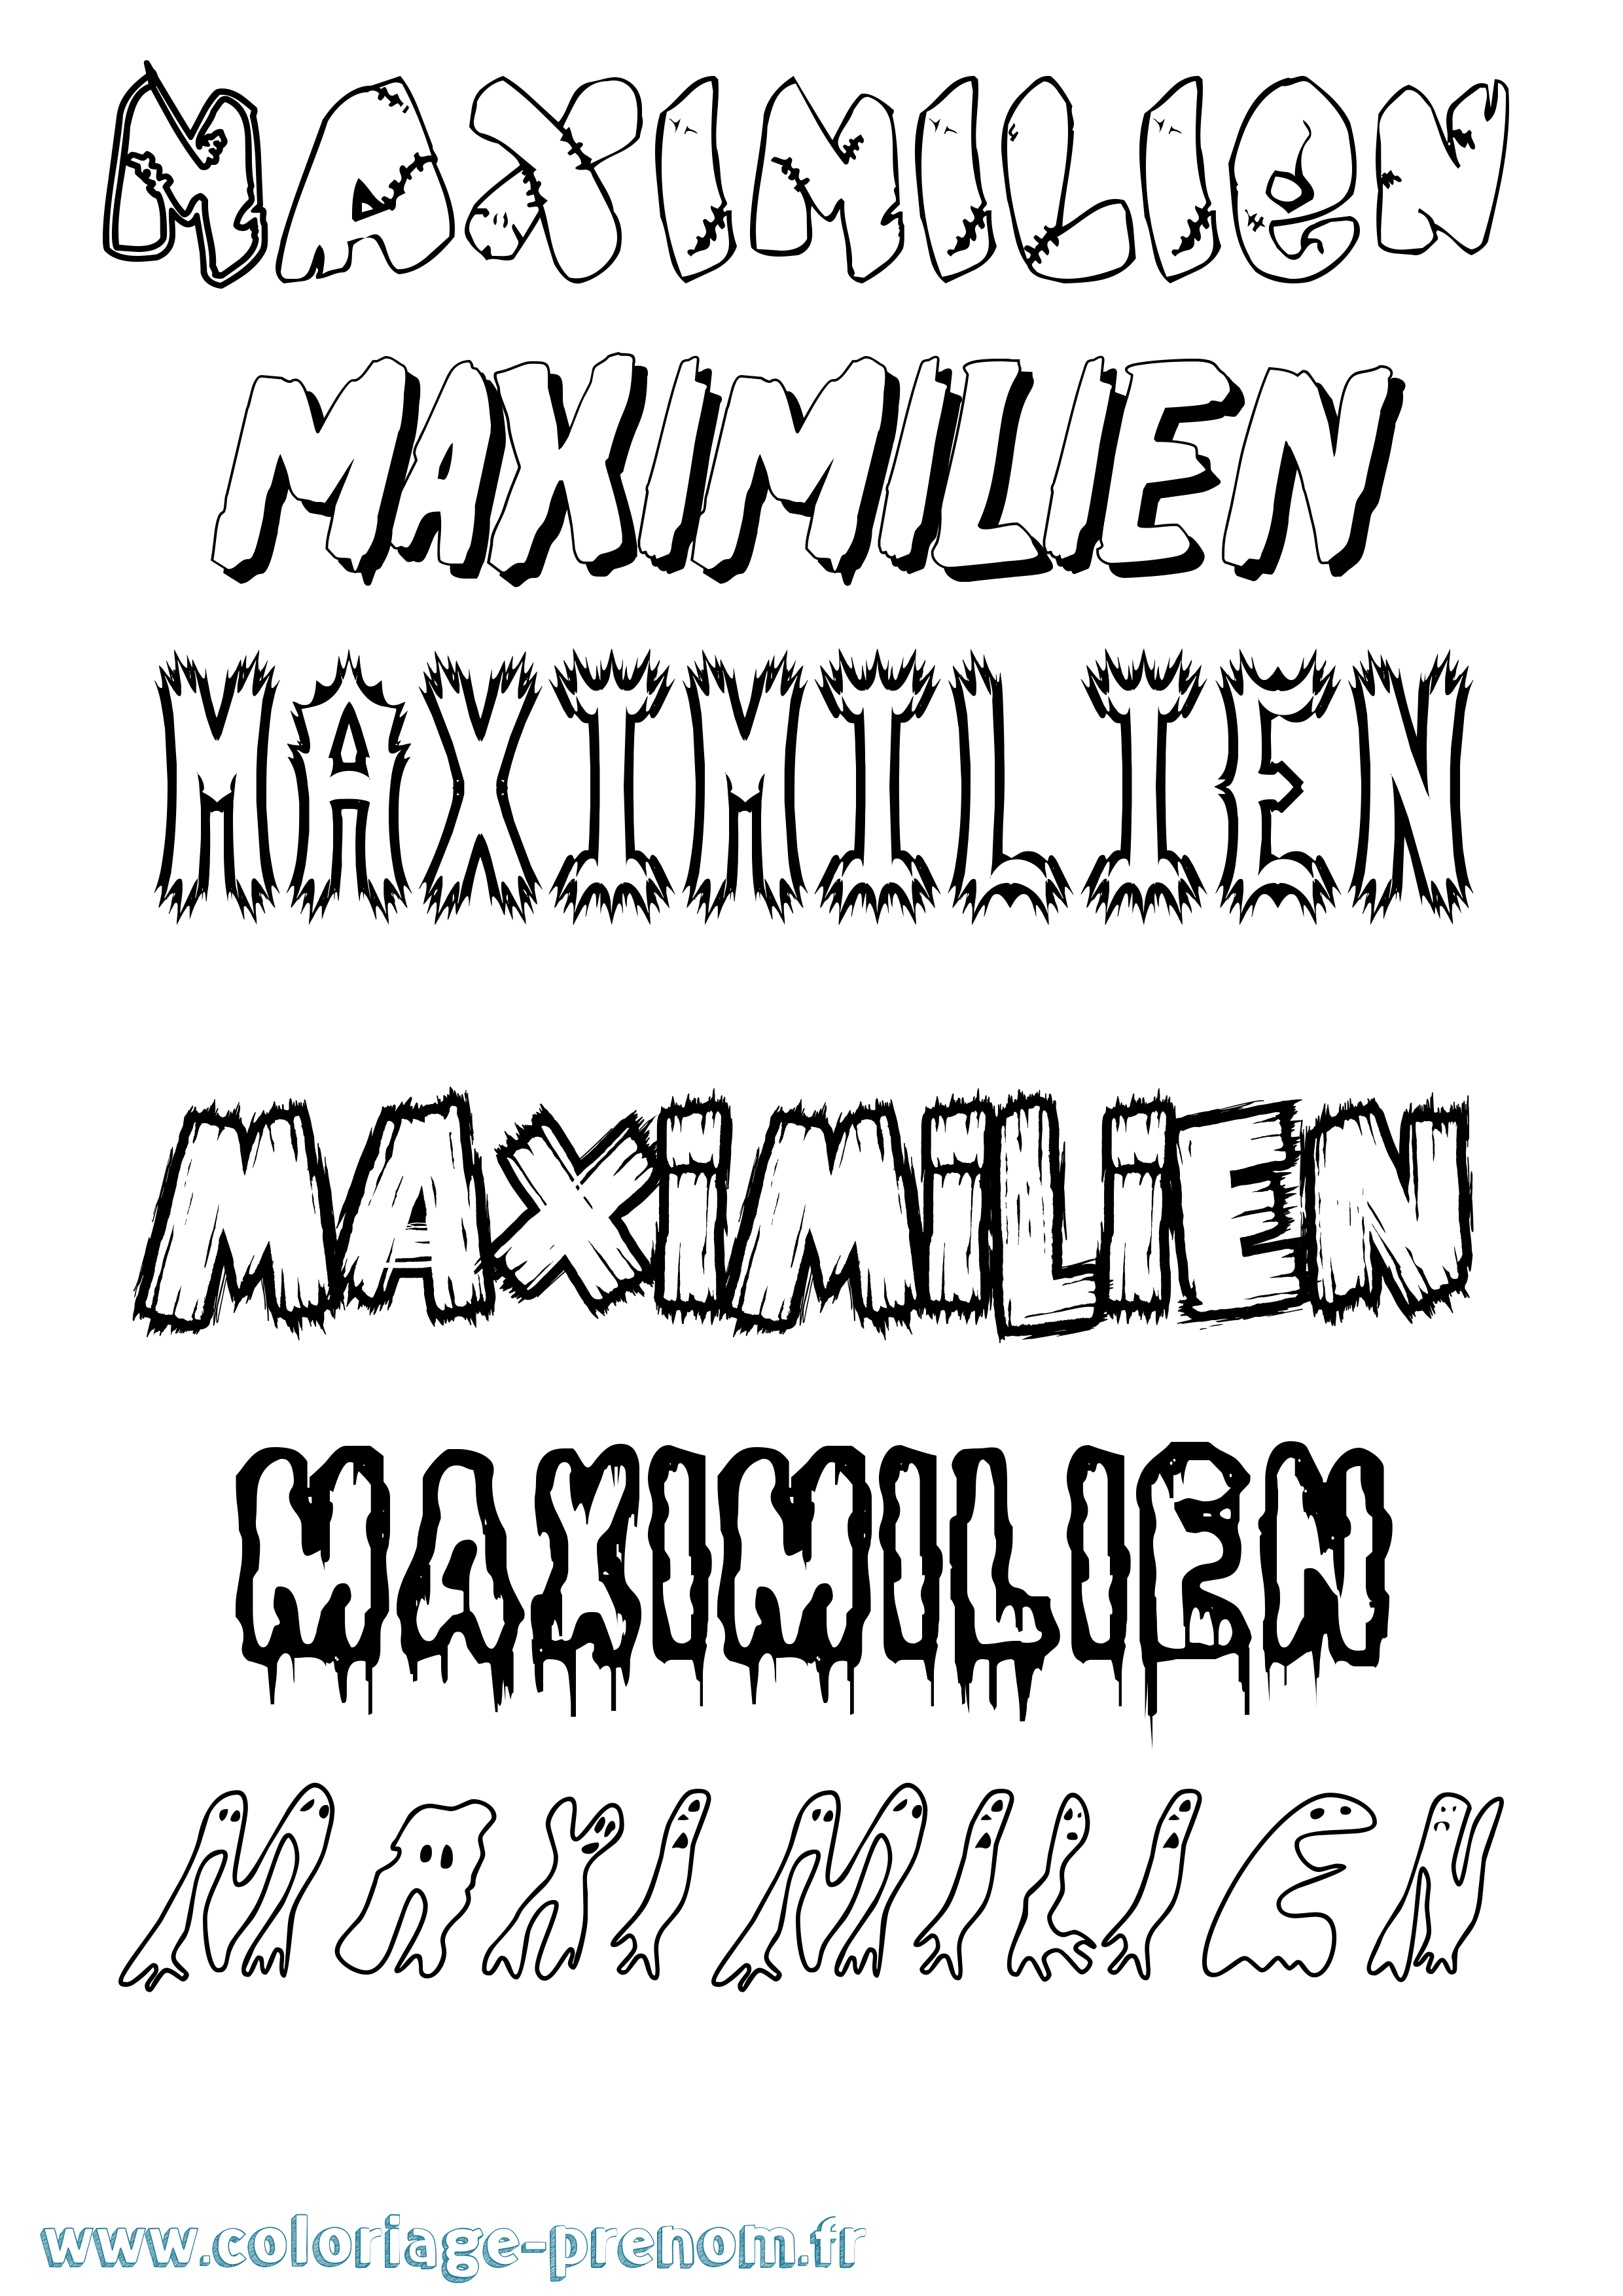 Coloriage prénom Maximilien Frisson